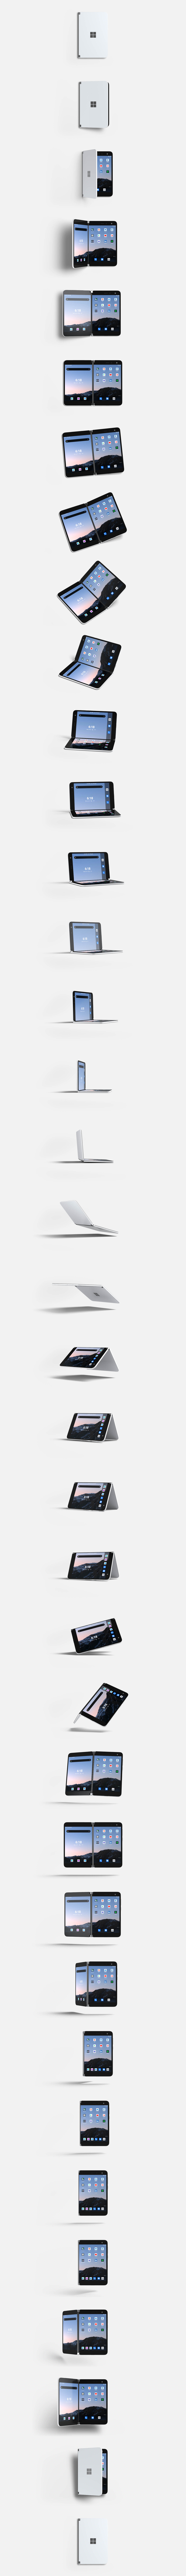 Les nombreux modes du Surface Duo